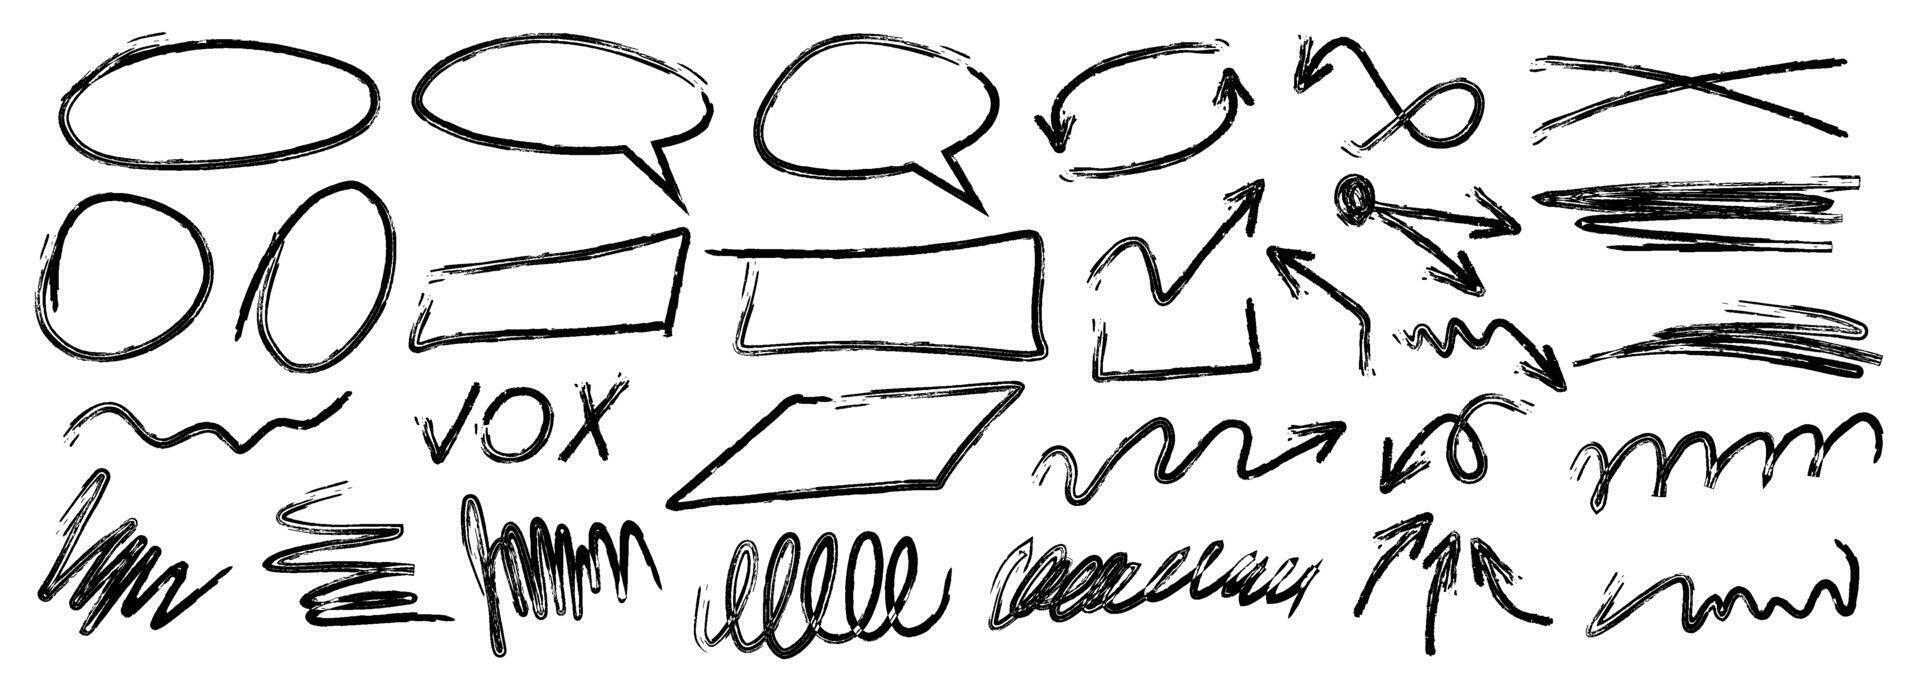 coleção do carvão desenhos dentro grunge estilo. linhas, oval, retângulo, Setas; flechas desenhado com uma lápis ou marcador. vetor ilustração.